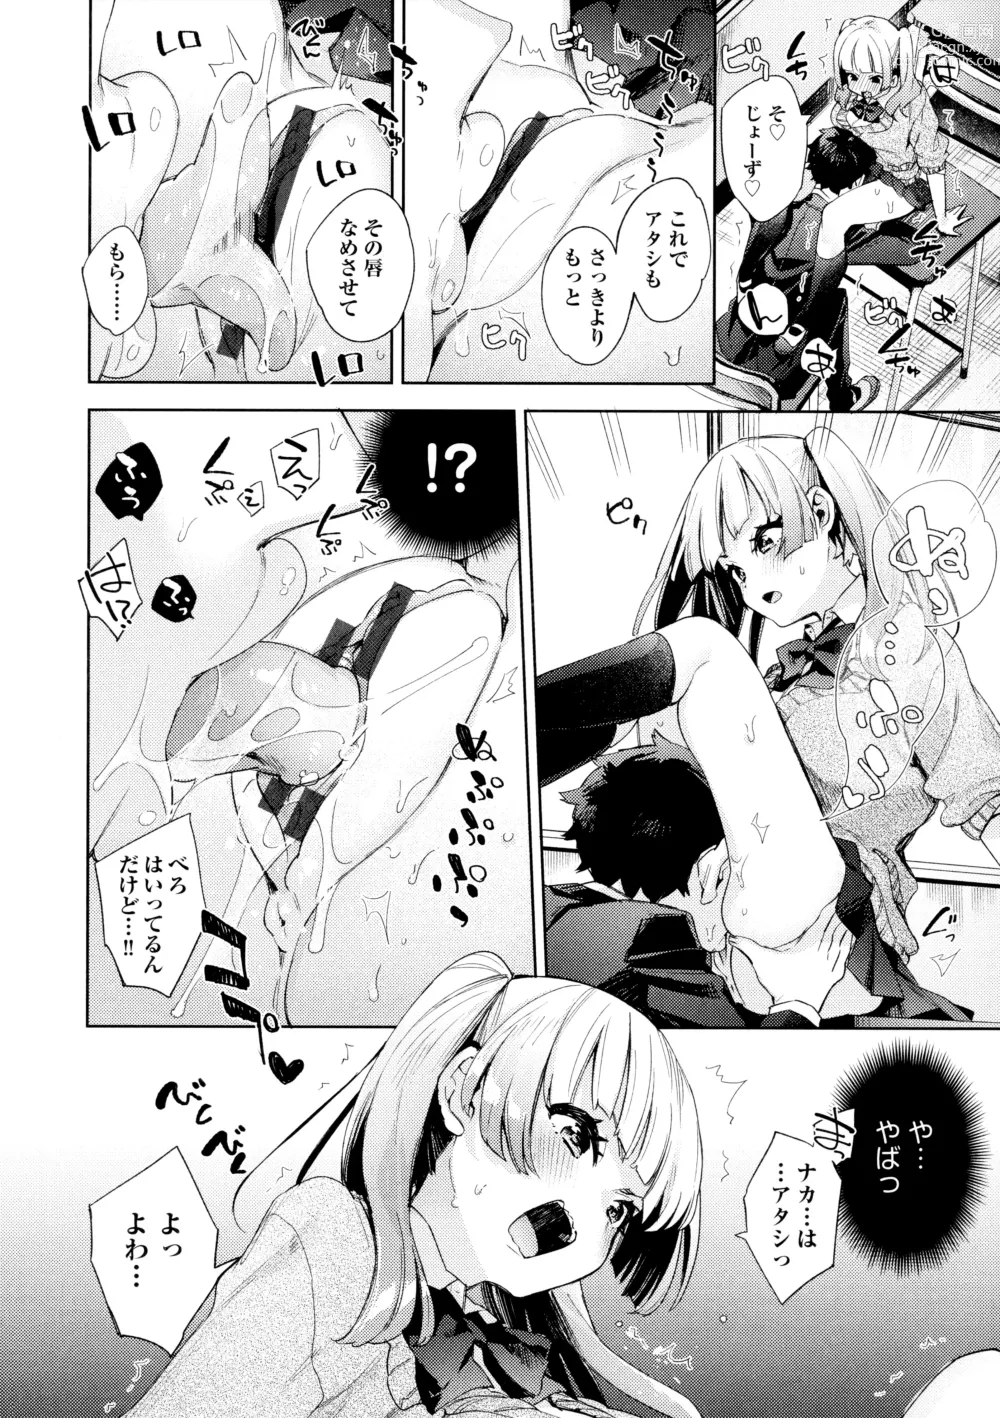 Page 192 of manga Echijoshi Profile - H Girl Profile